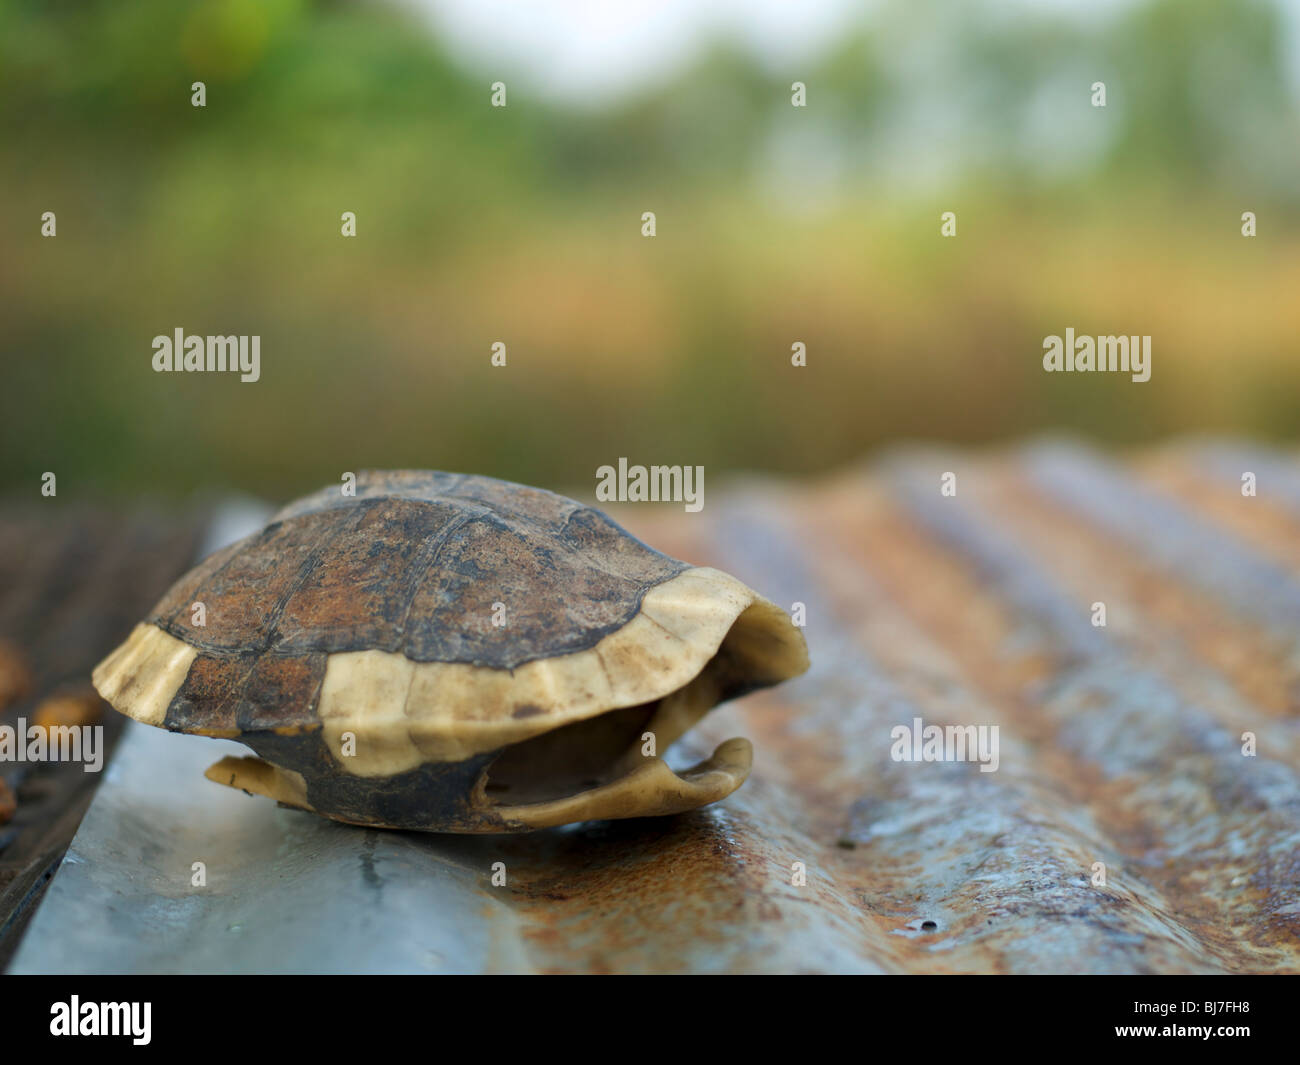 L'écaille de tortue vide sur une feuille de métal ondulé Banque D'Images